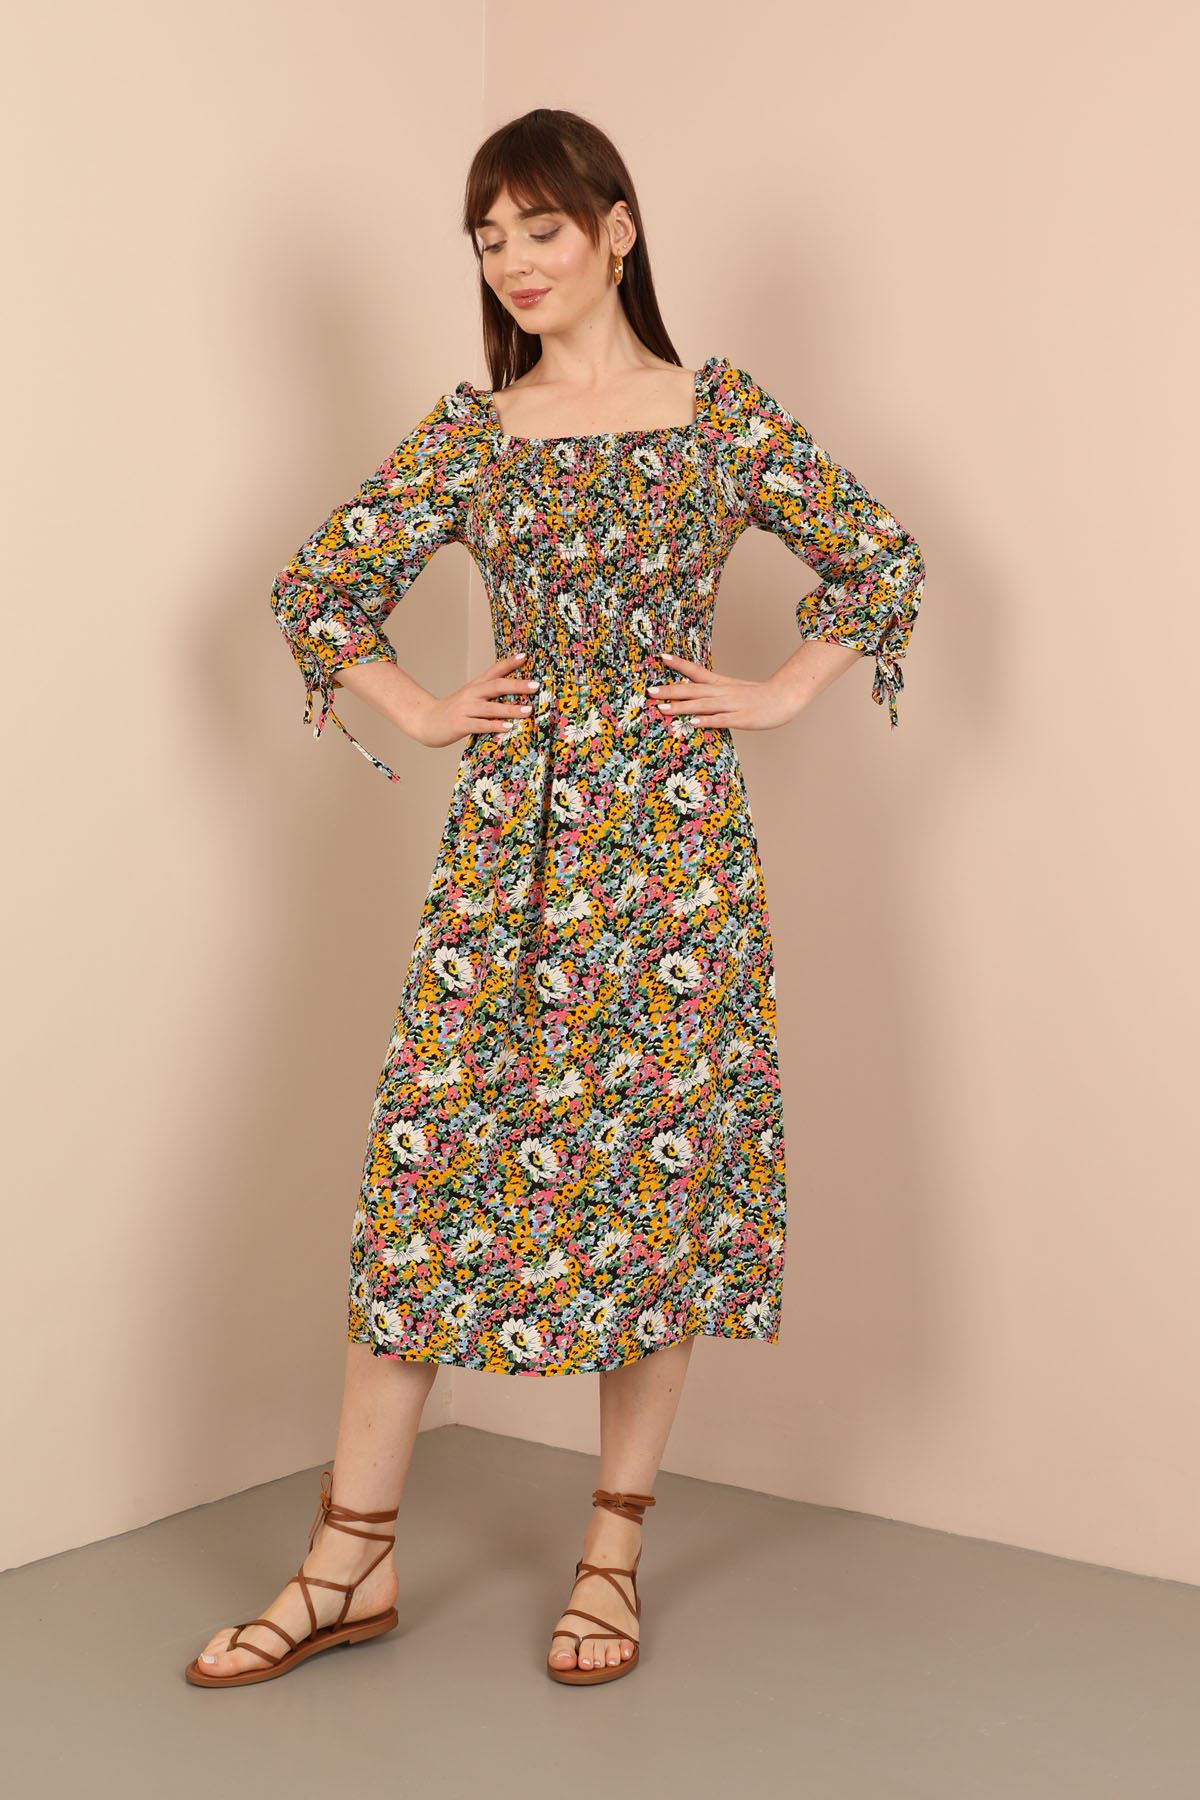 Viscose Fabric Square Neckline Midi Floral Print Women Dress - Mustard